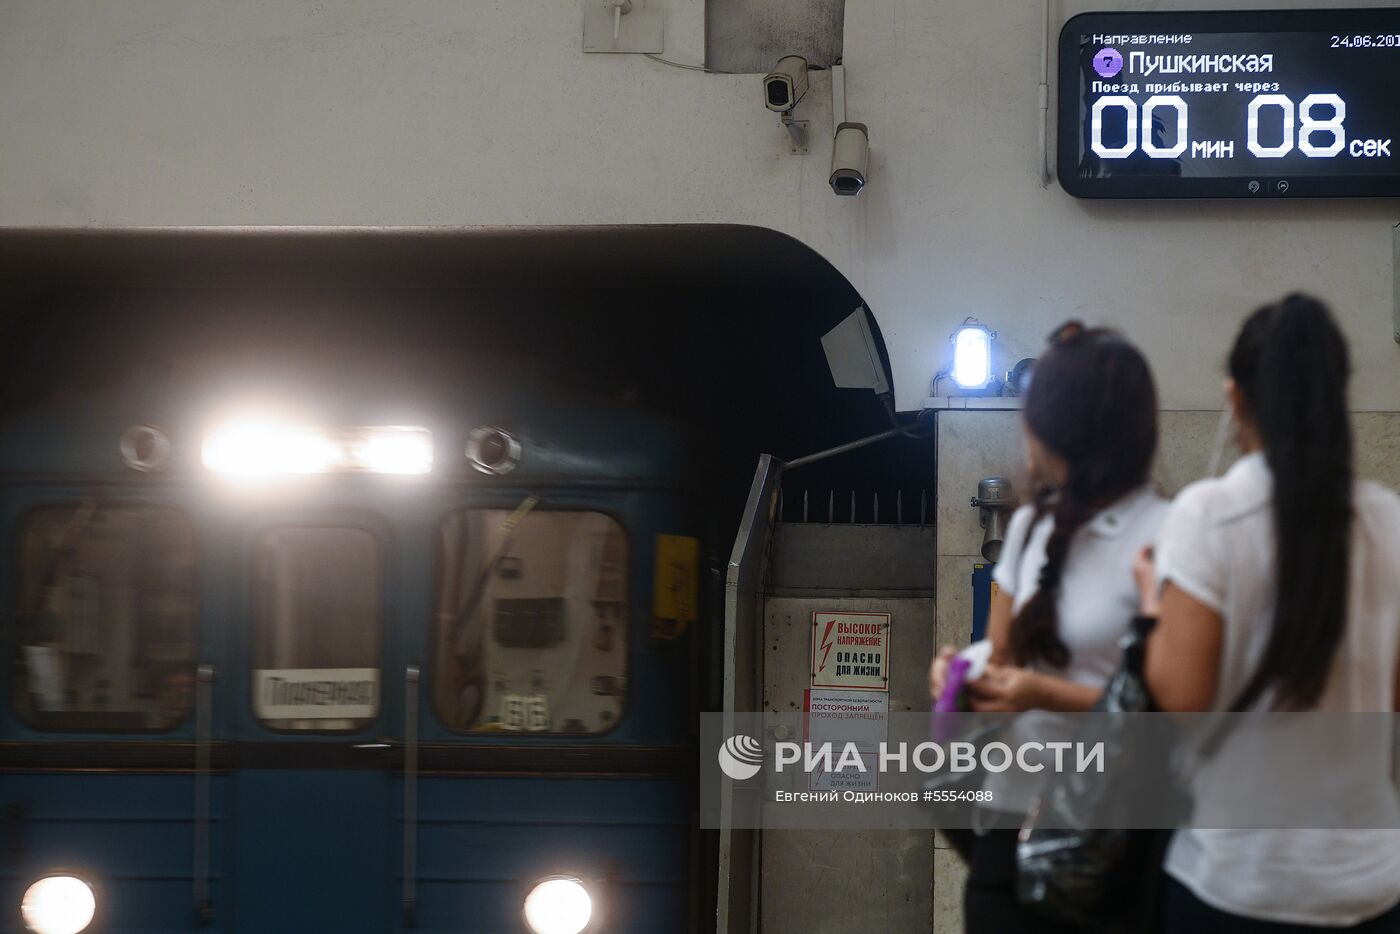 Табло обратного отсчета времени в московском метро